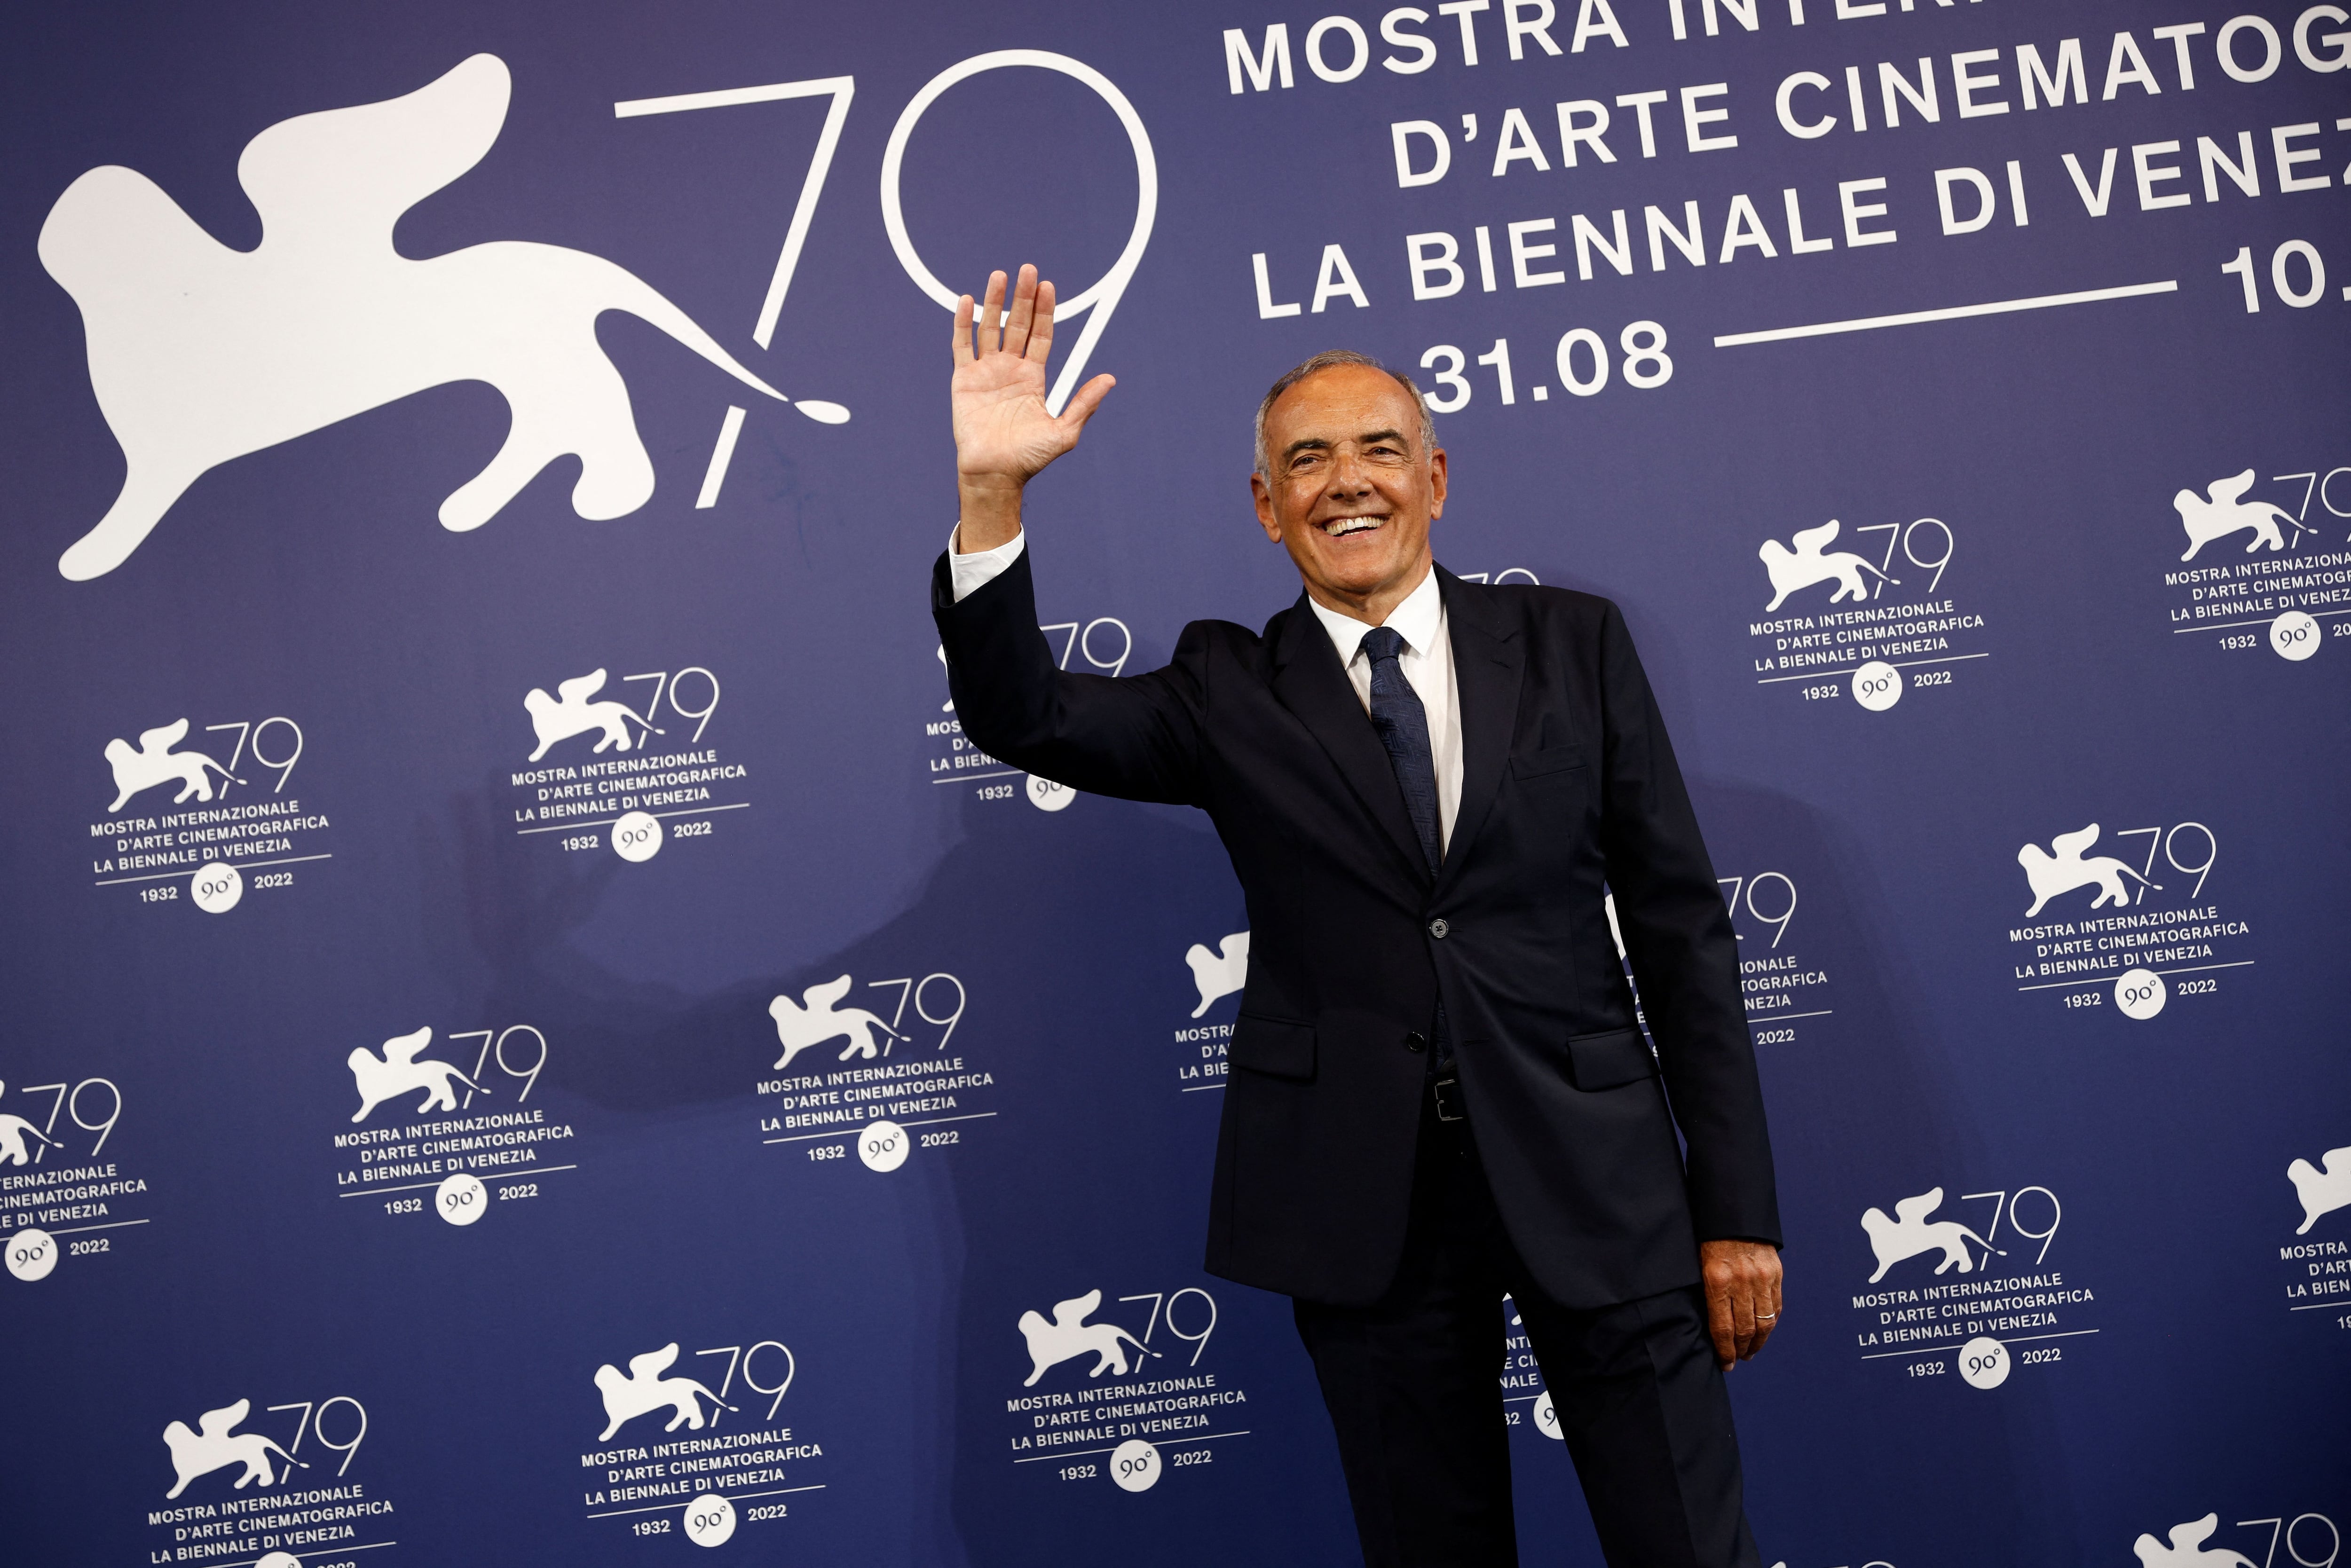 “Es una situación sin precedentes”, afirma Alberto Barbera, director del Festival Internacional de Cine de Venecia, sobre la huelga de actores de Hollywood (Foto: REUTERS/Guglielmo Mangiapane)